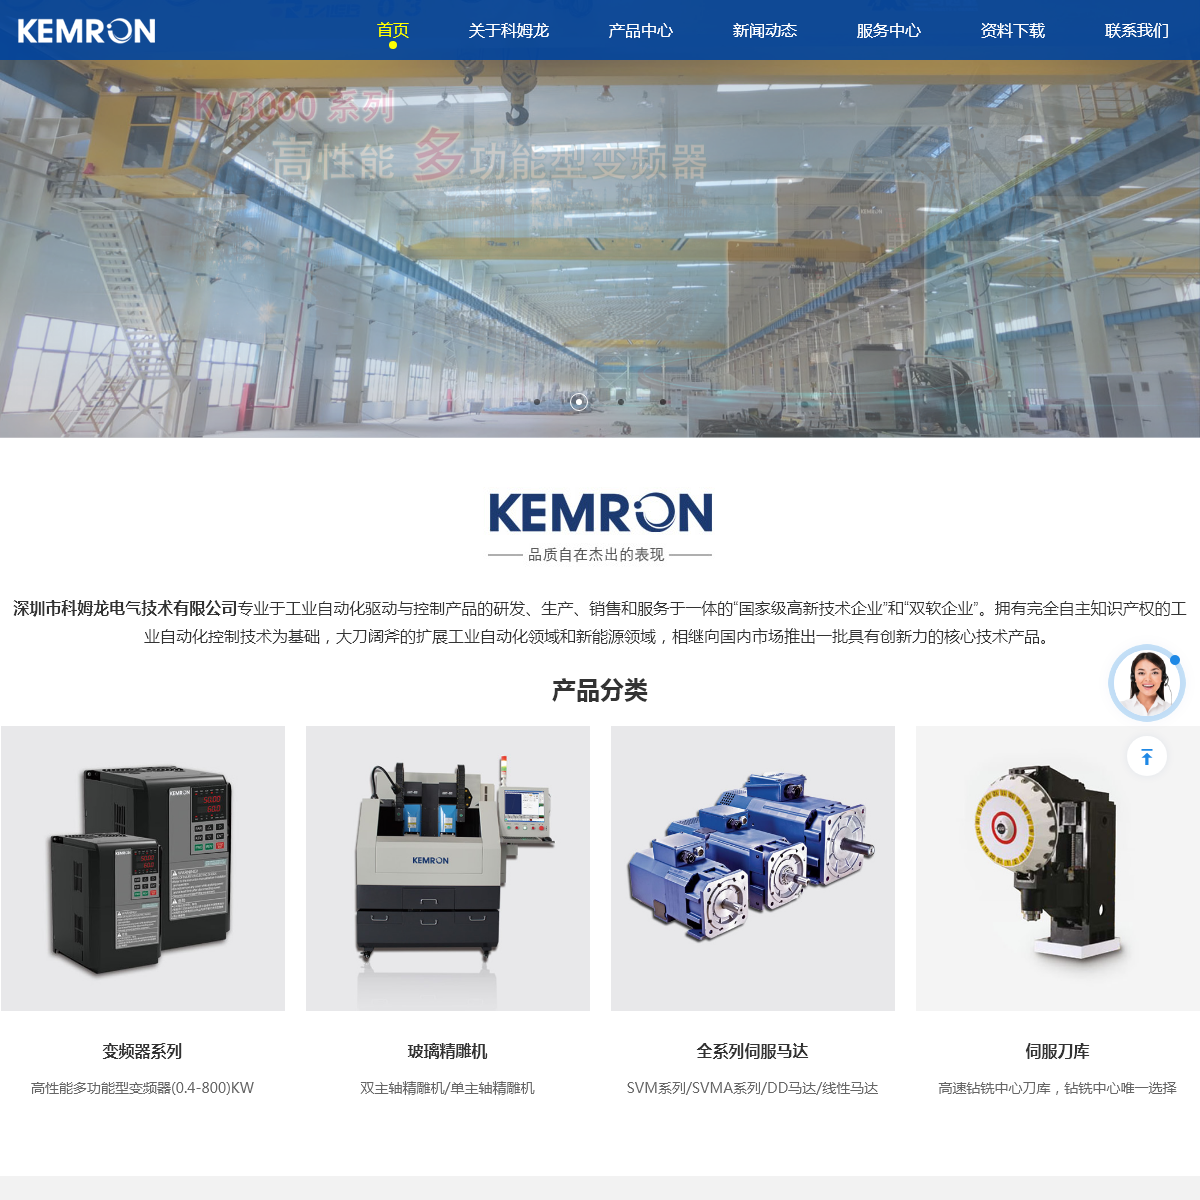 A complete backup of kemron.com.cn